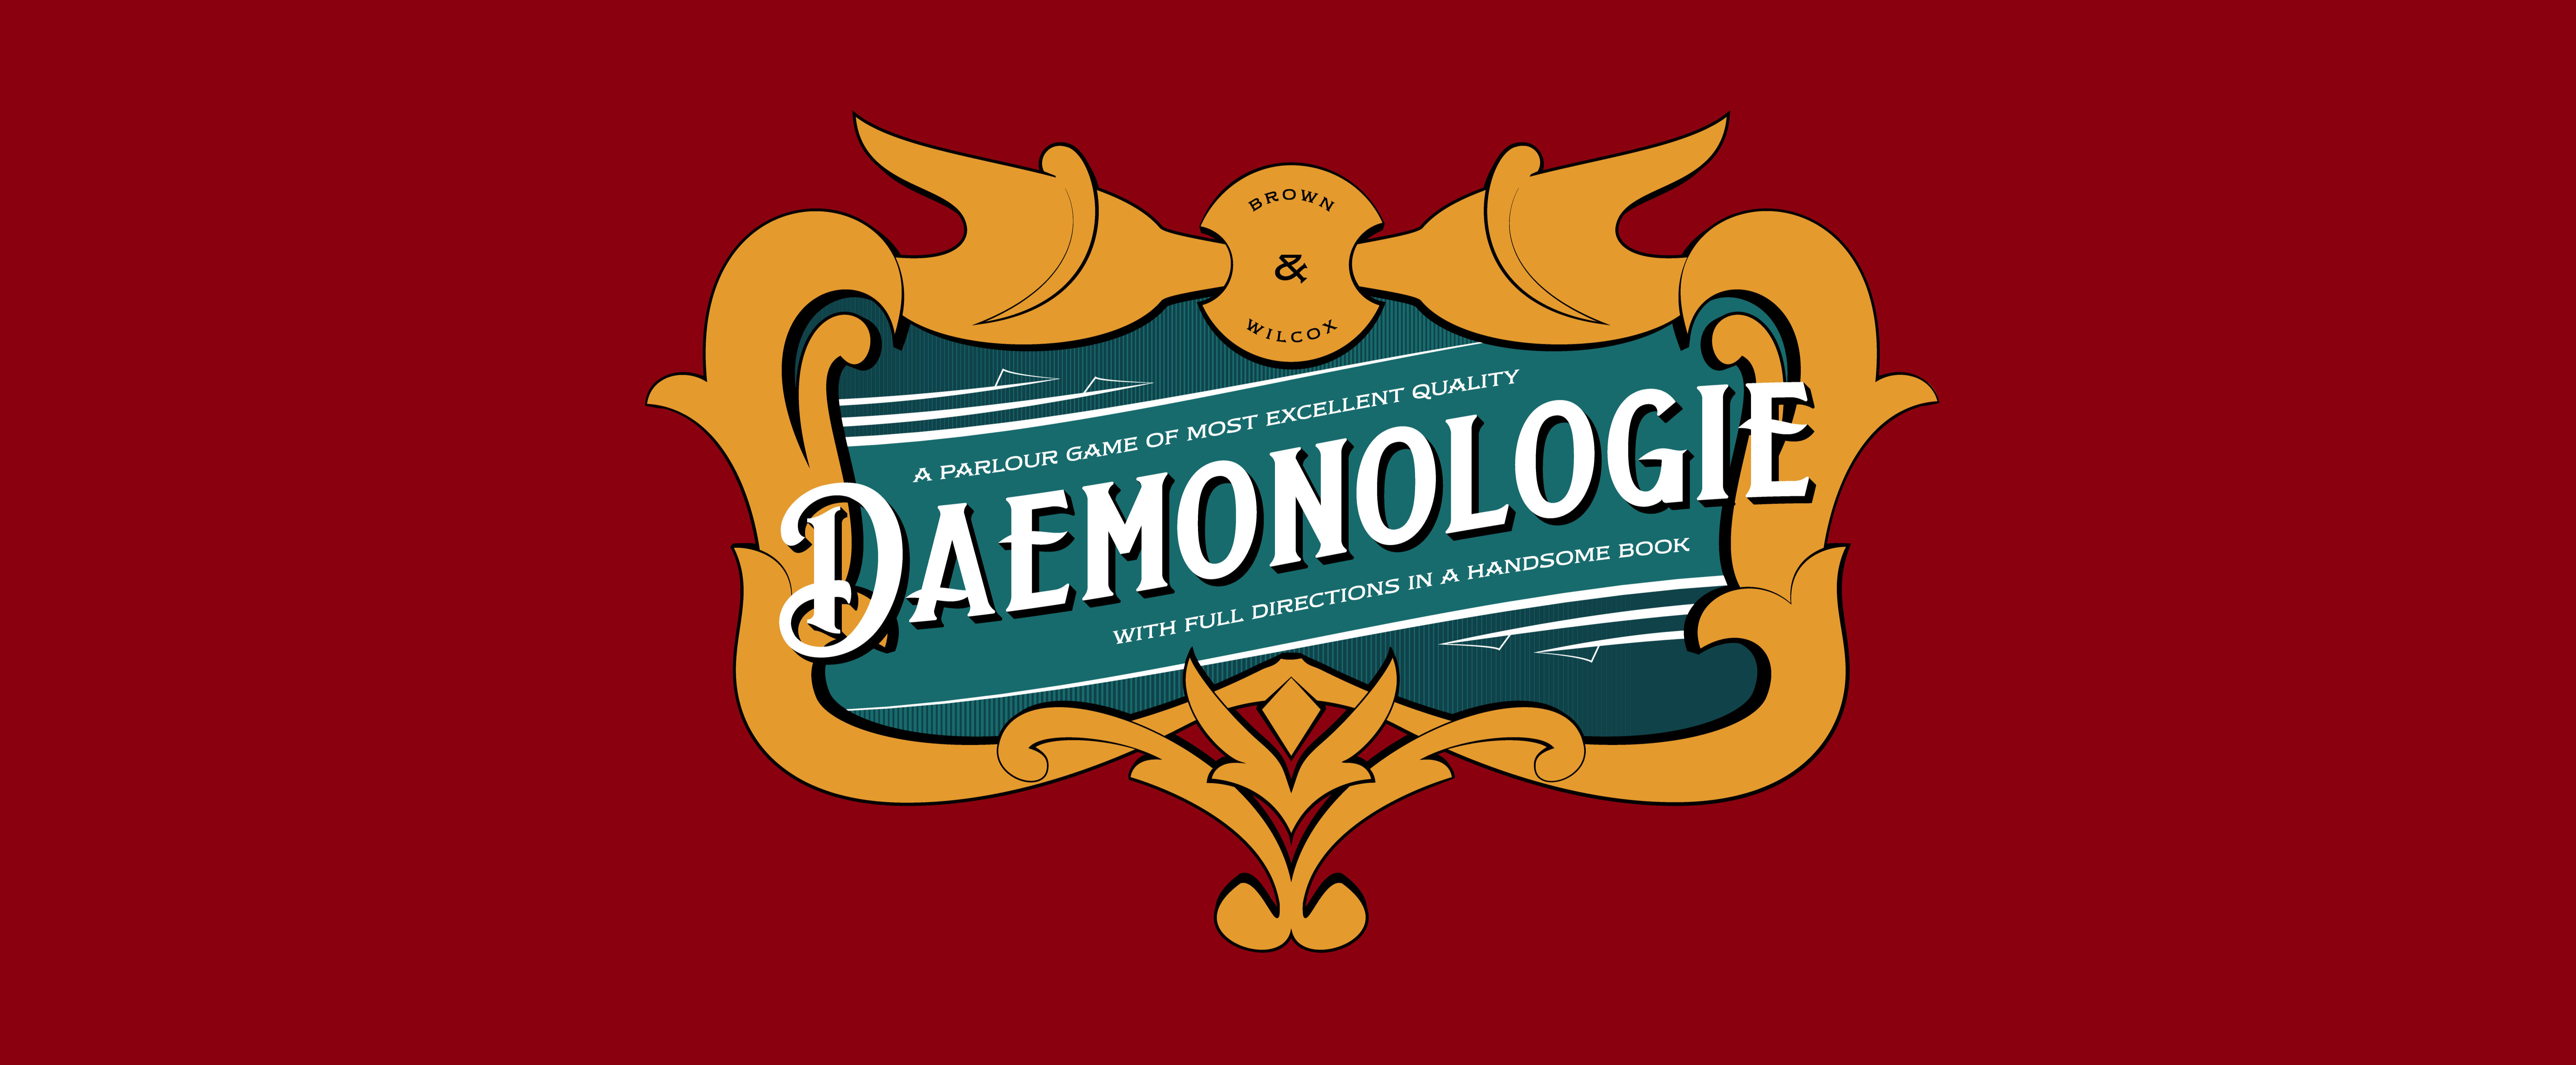 Daemonologie Field Guide